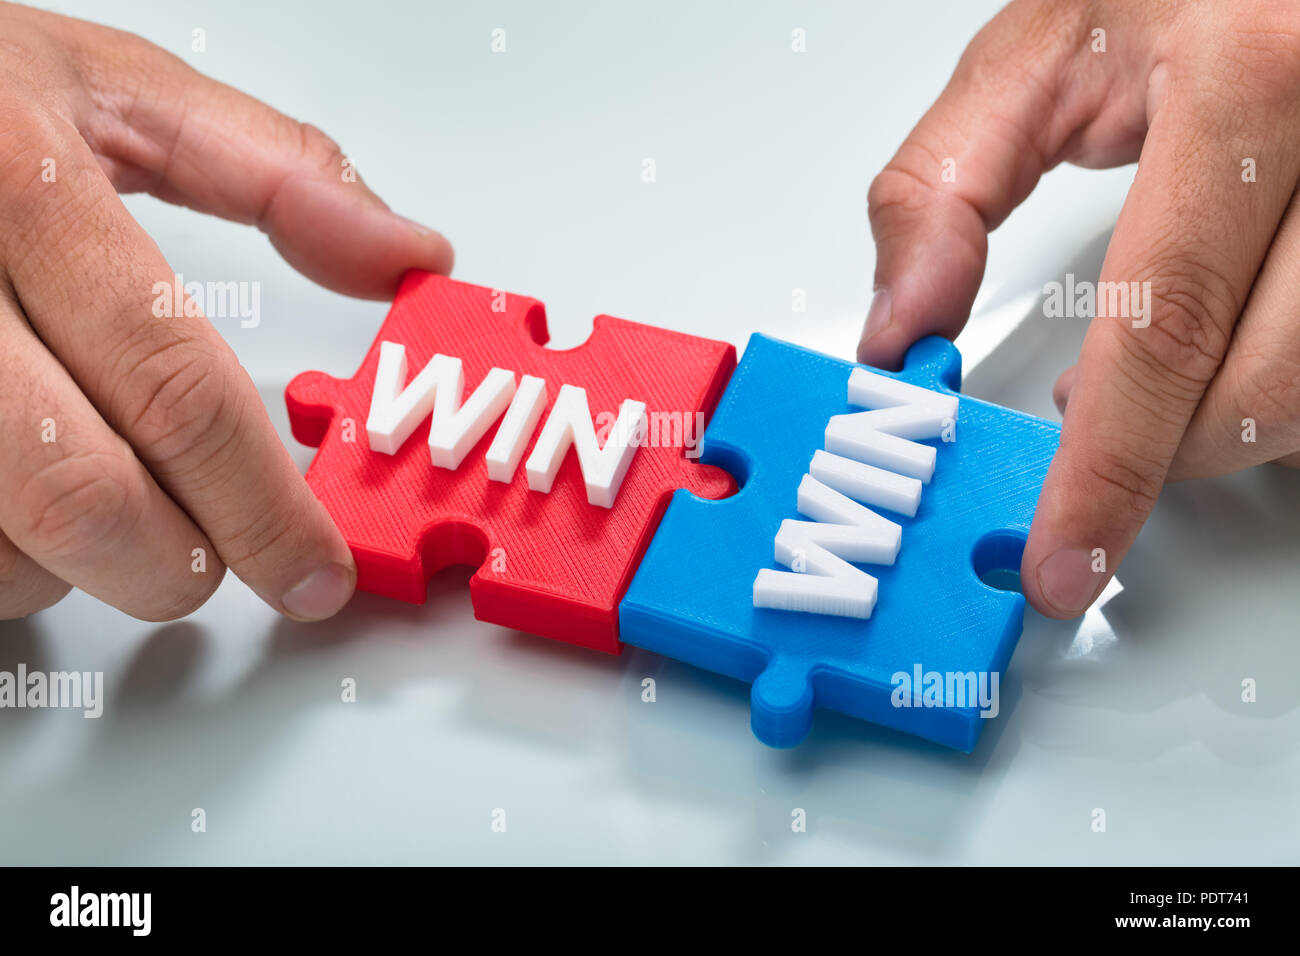 Close-up of a person's hand reliant deux bleu et rouge win word puzzle Banque D'Images